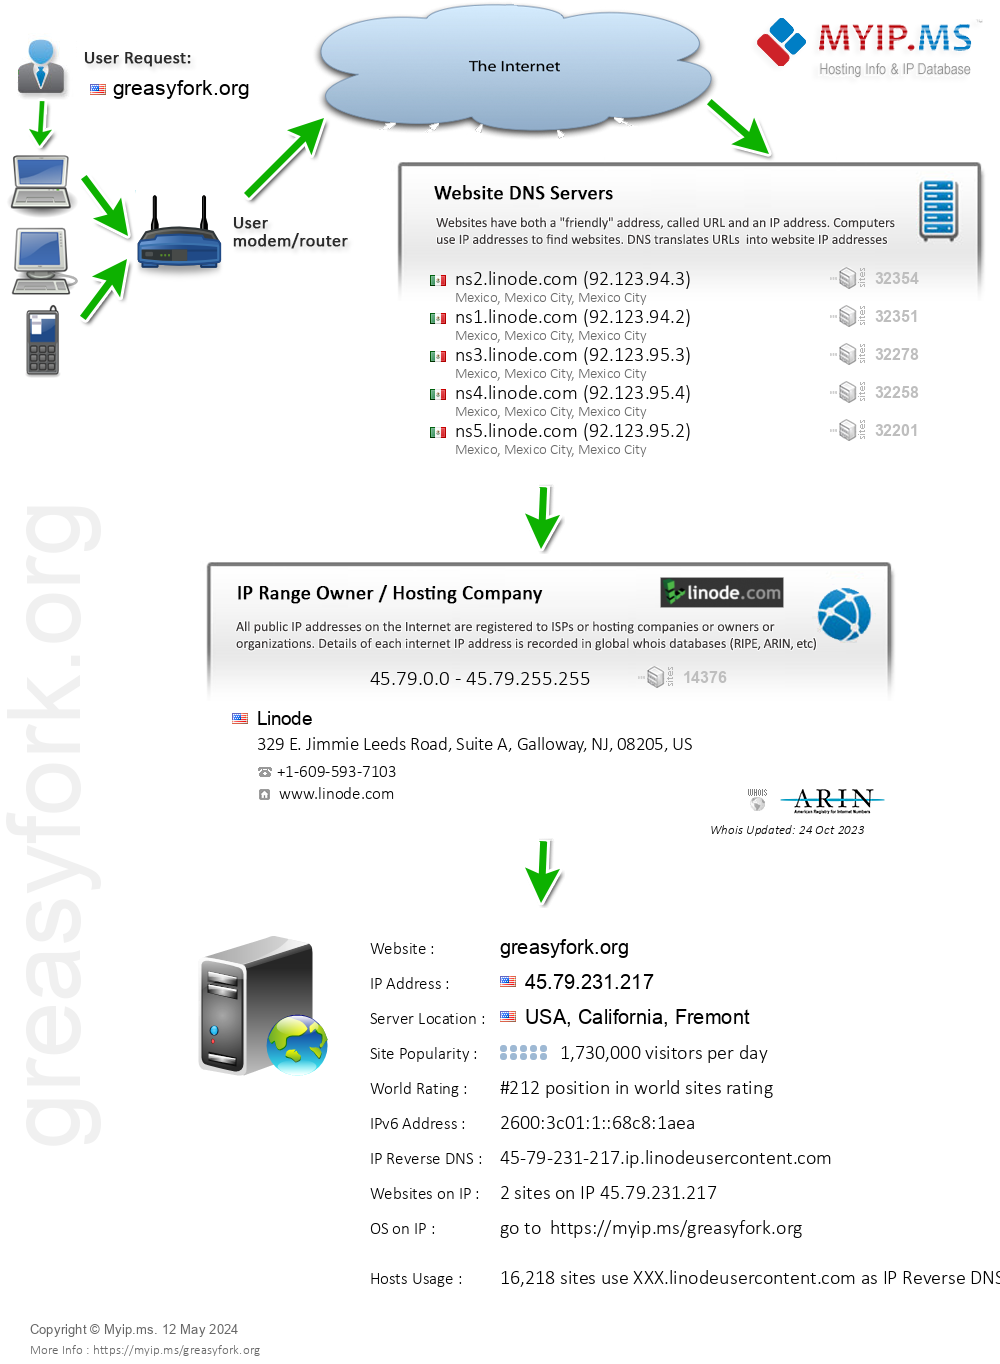 Greasyfork.org - Website Hosting Visual IP Diagram